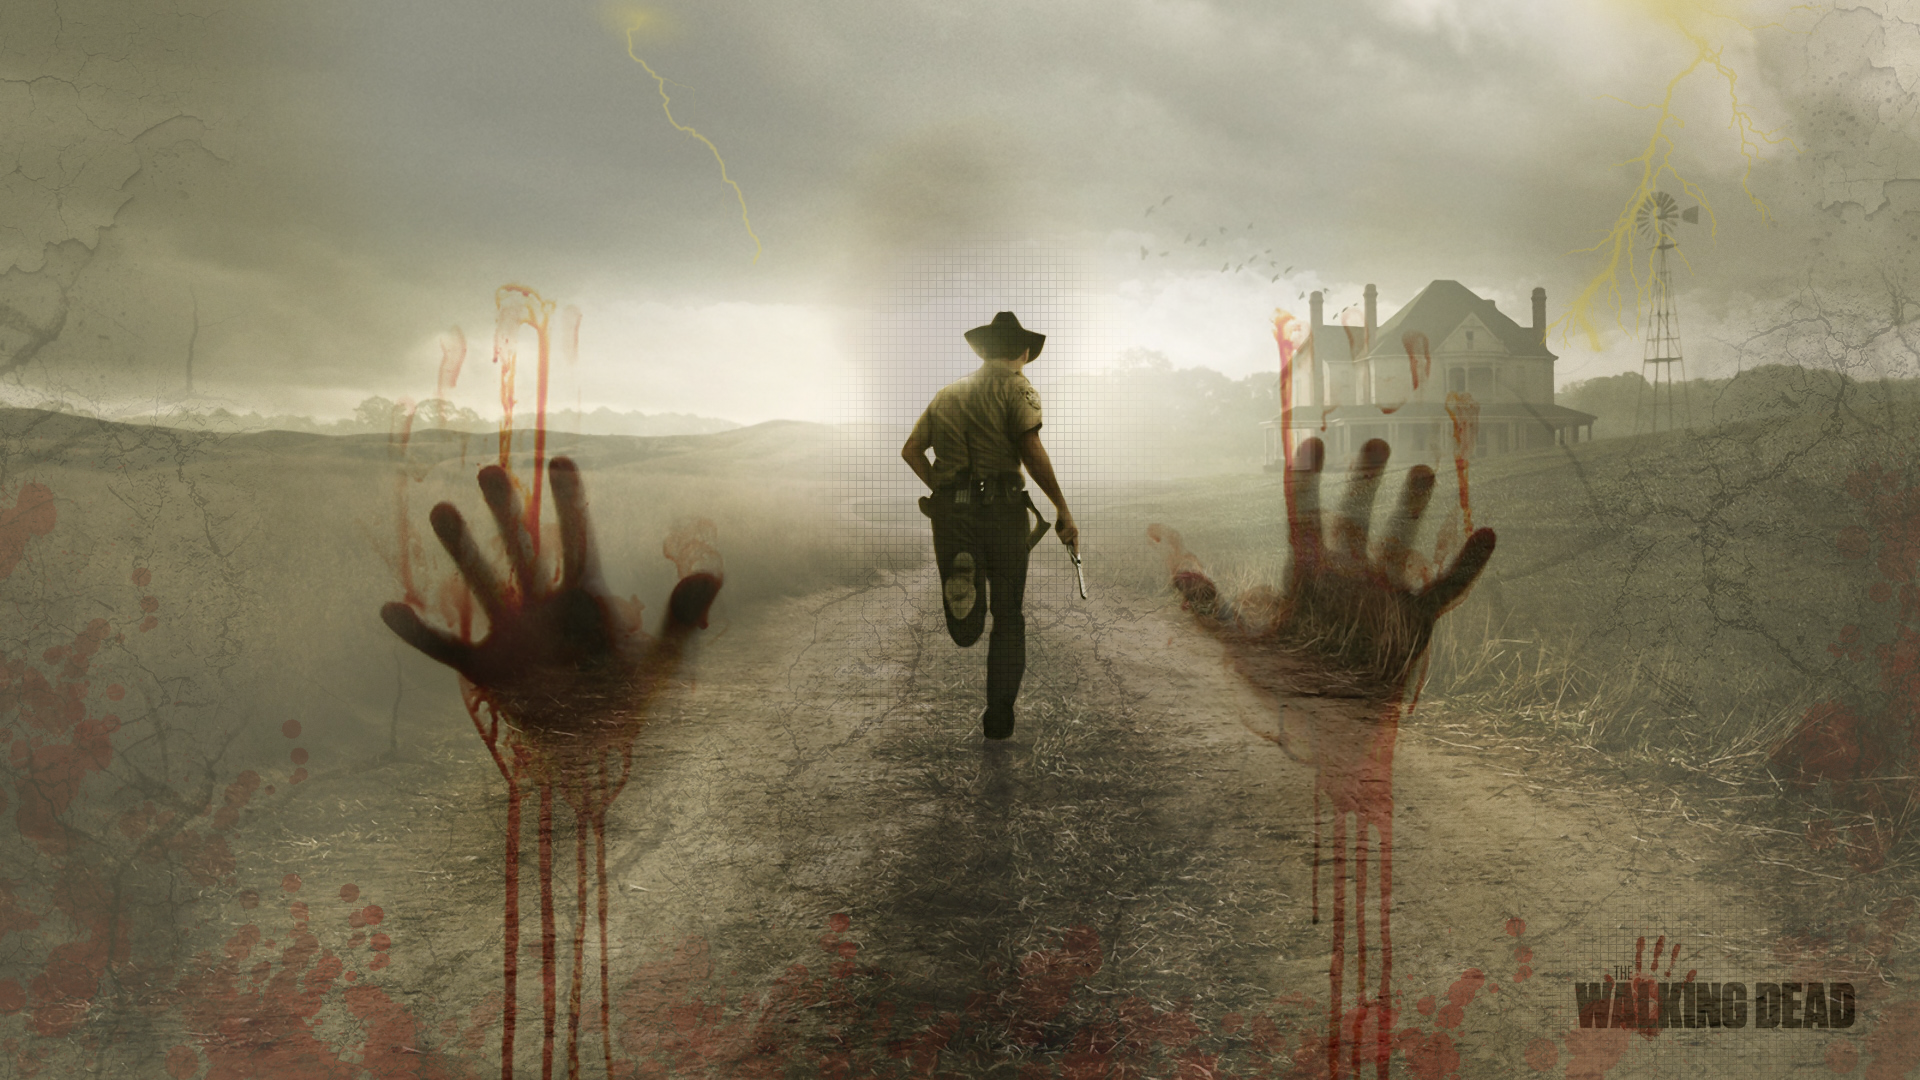 The Walking Dead HD Backgrounds